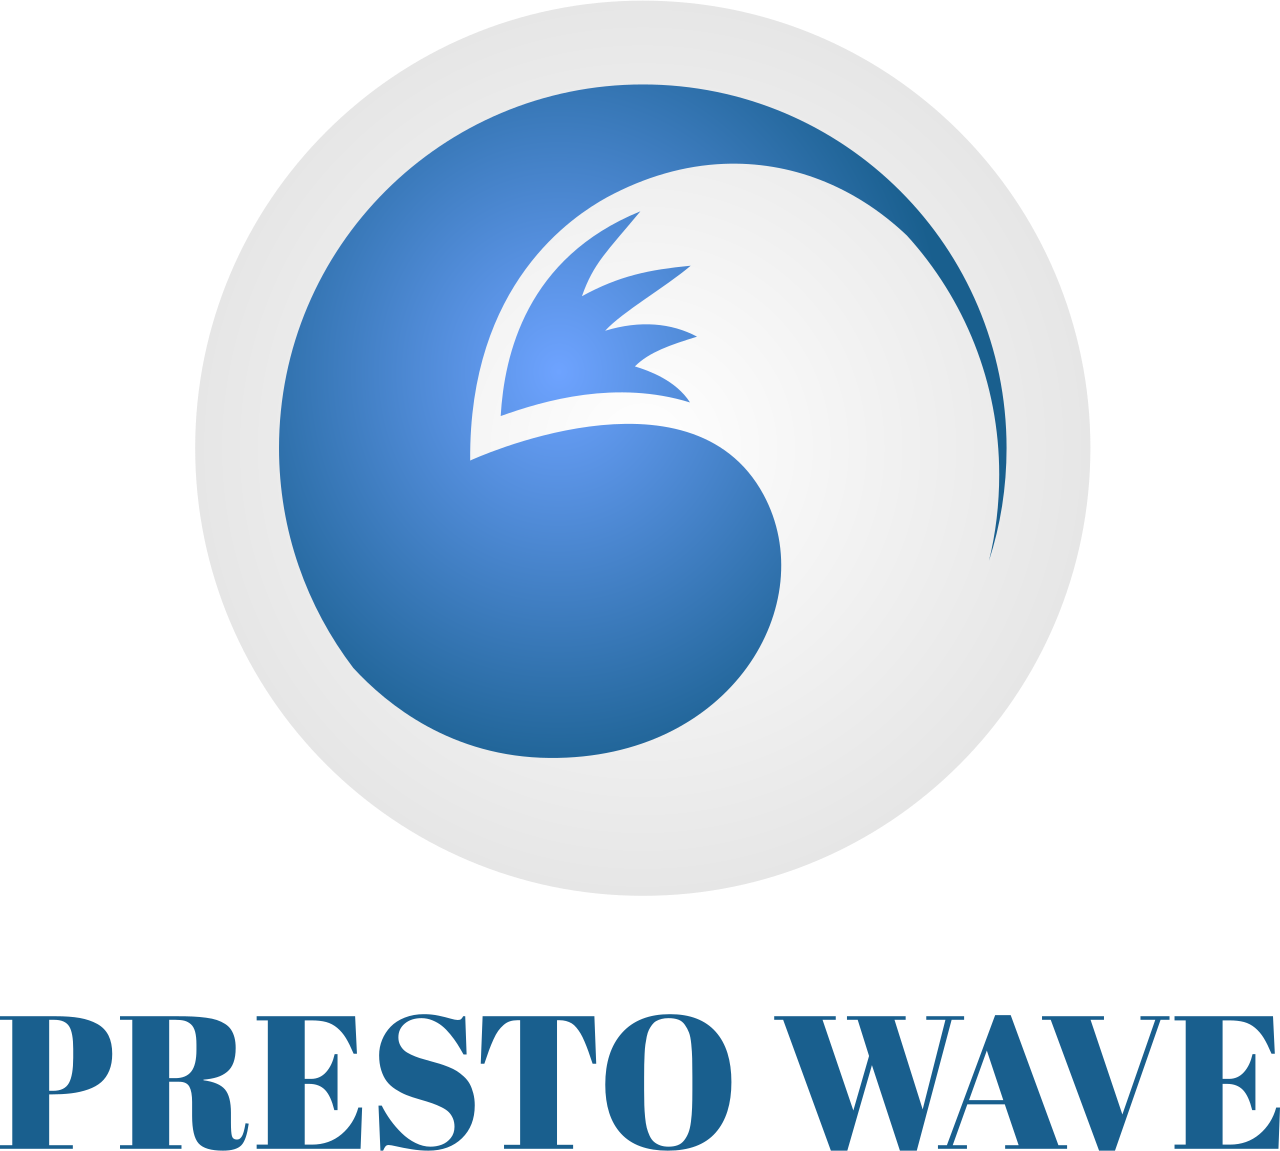 PRESTO WAVE's logo